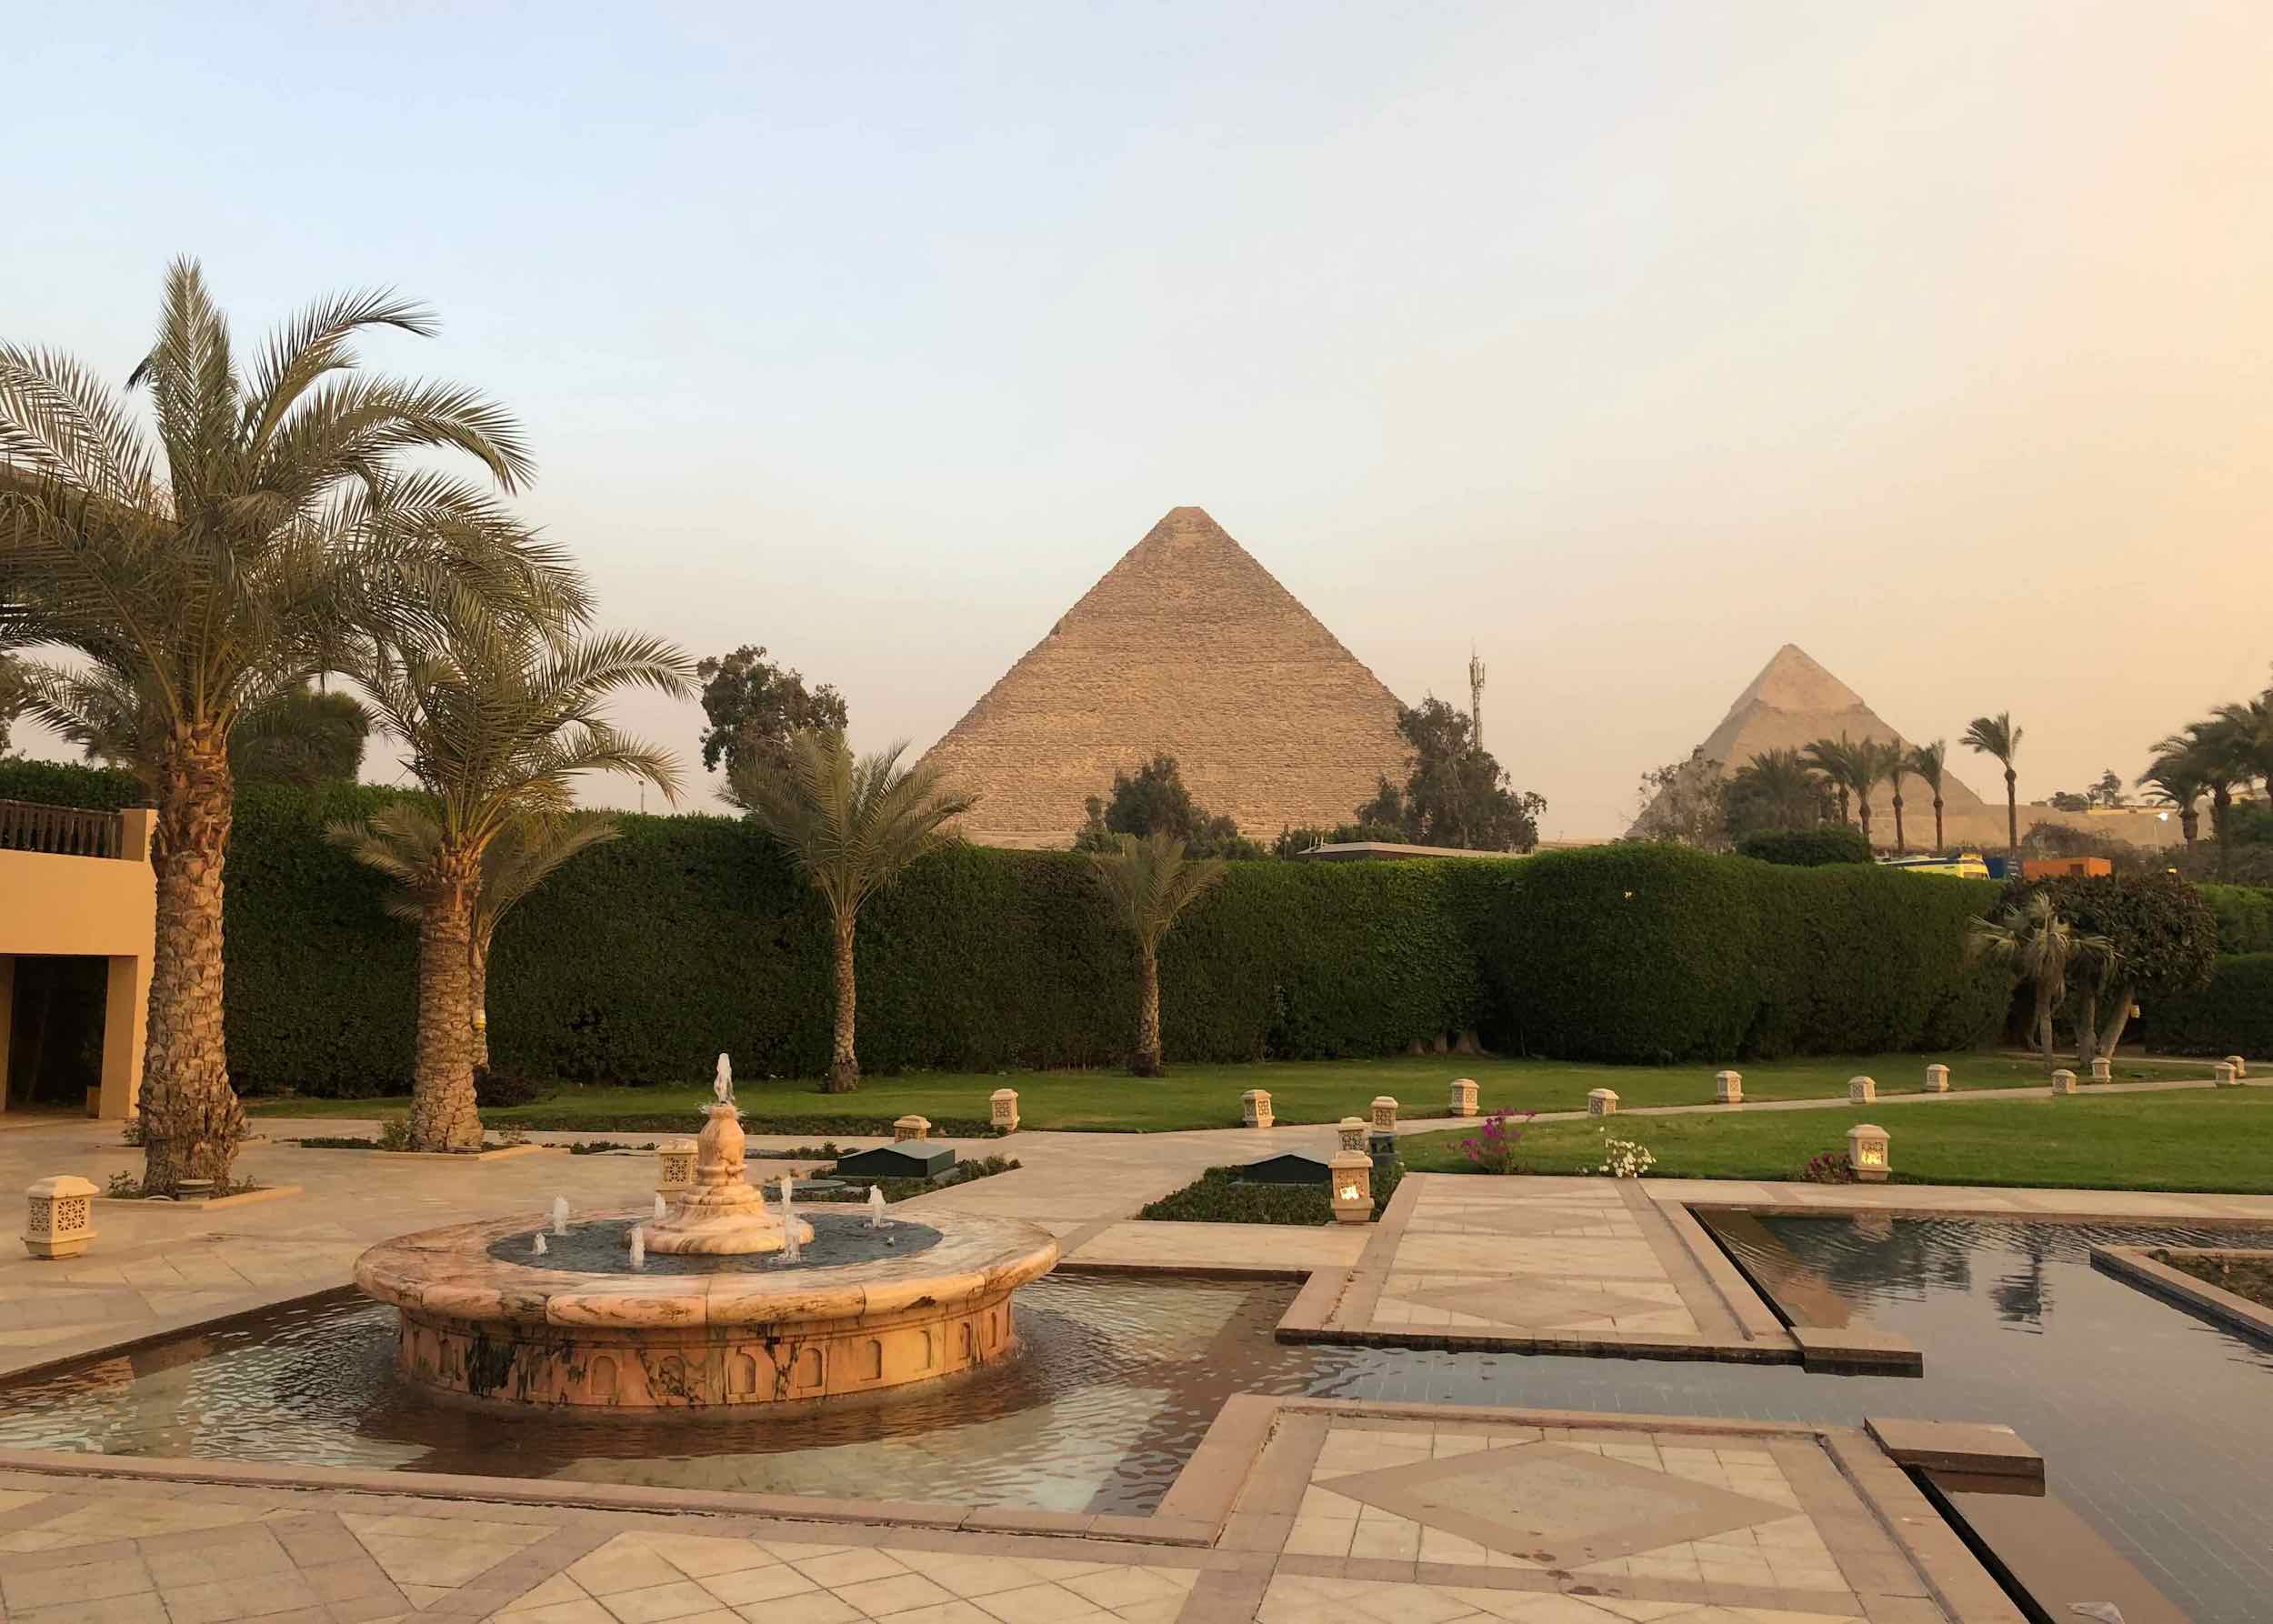 fountain, gardens and pyramids